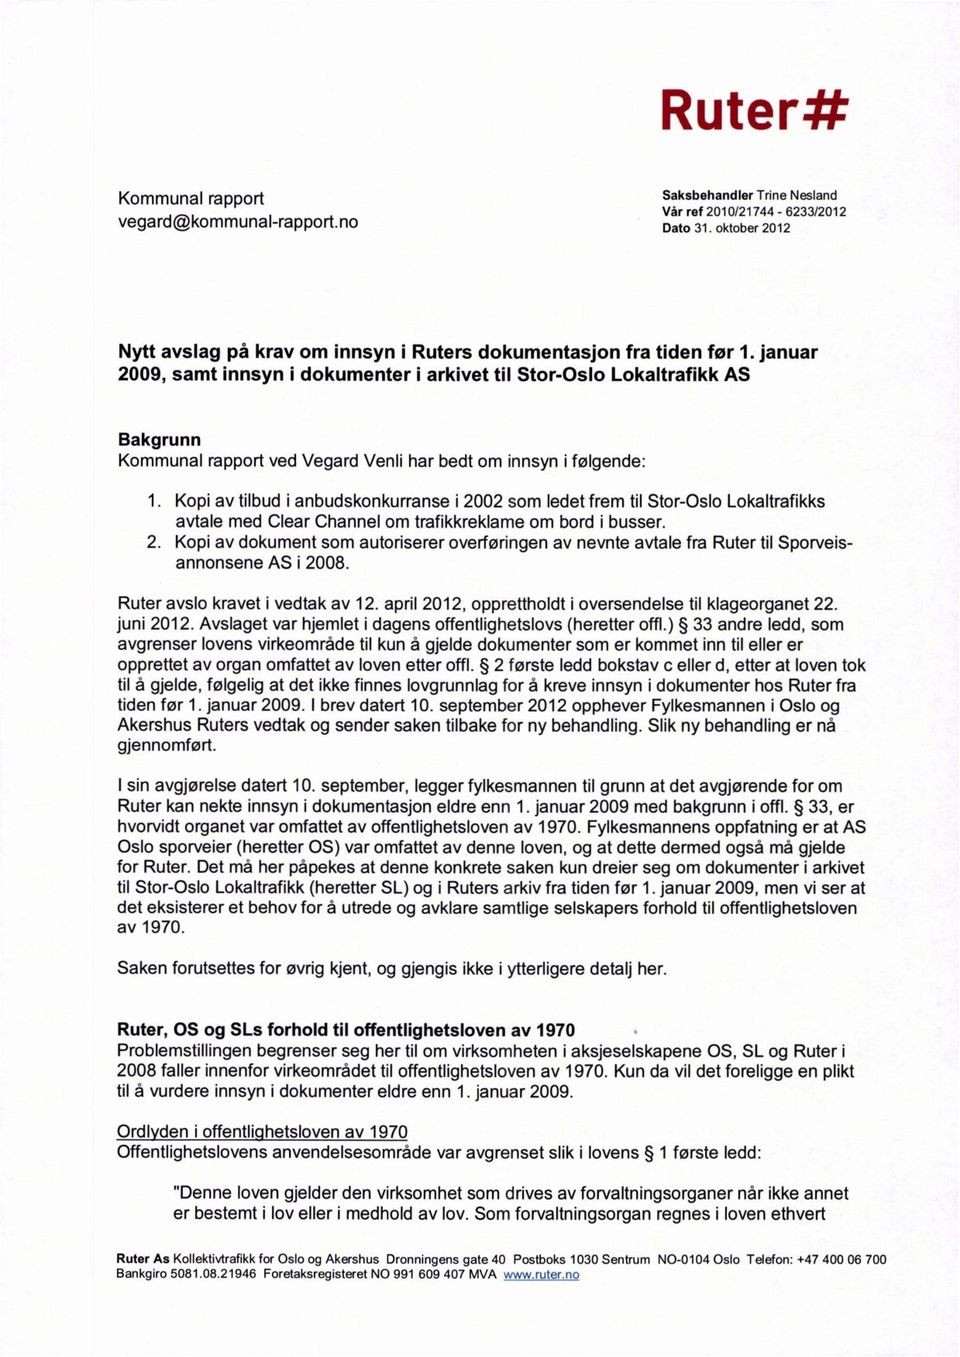 Lokaltrafikks avtale med Clear Channel om trafikkreklame om bord i busser. Kopi av dokument som autoriserer overføringen av nevnte avtale fra Ruter til Sporveisannonsene AS i 2008.